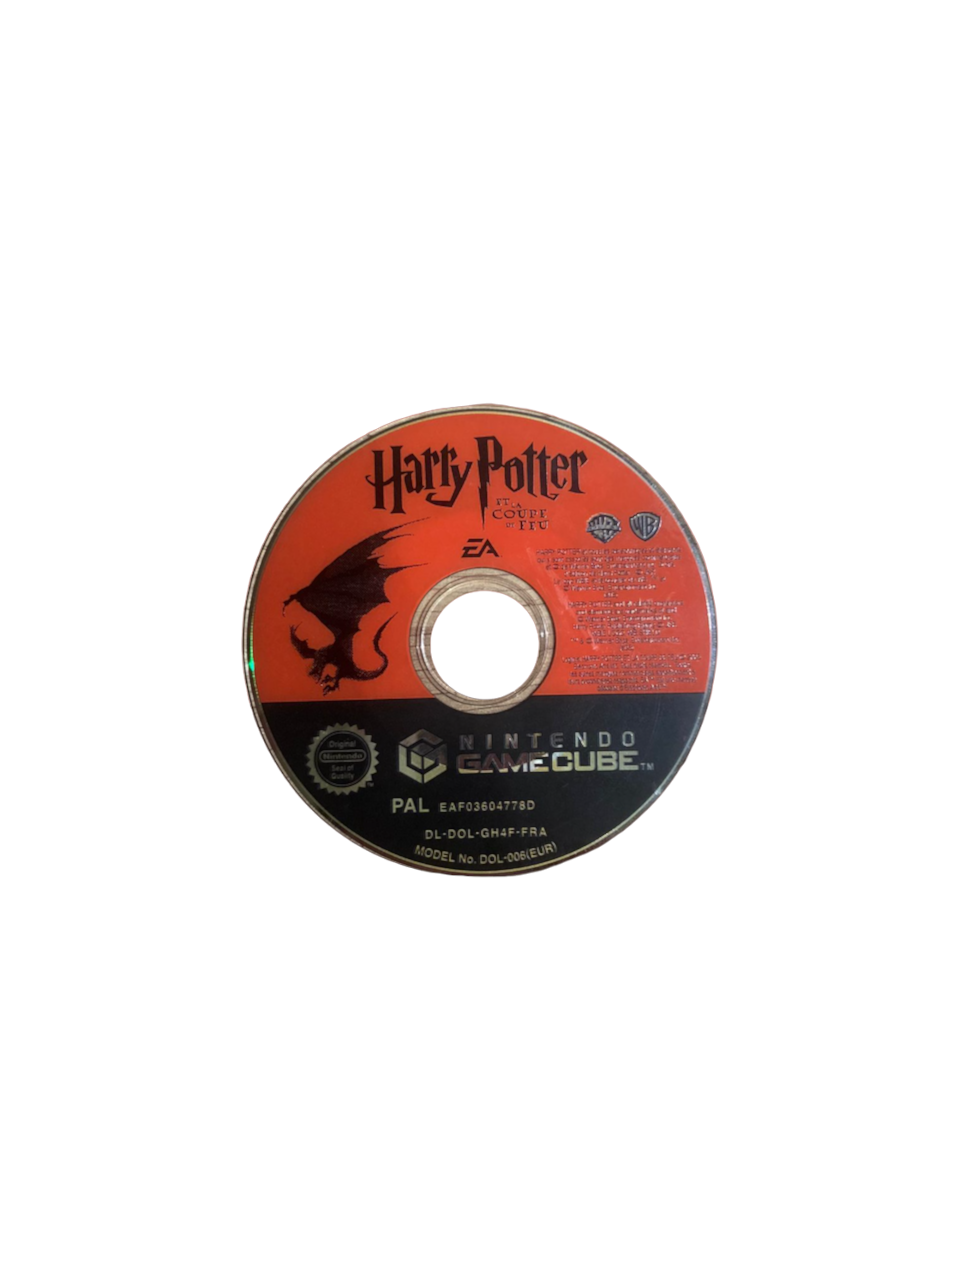 CD Harry Potter et la Coupe de feu